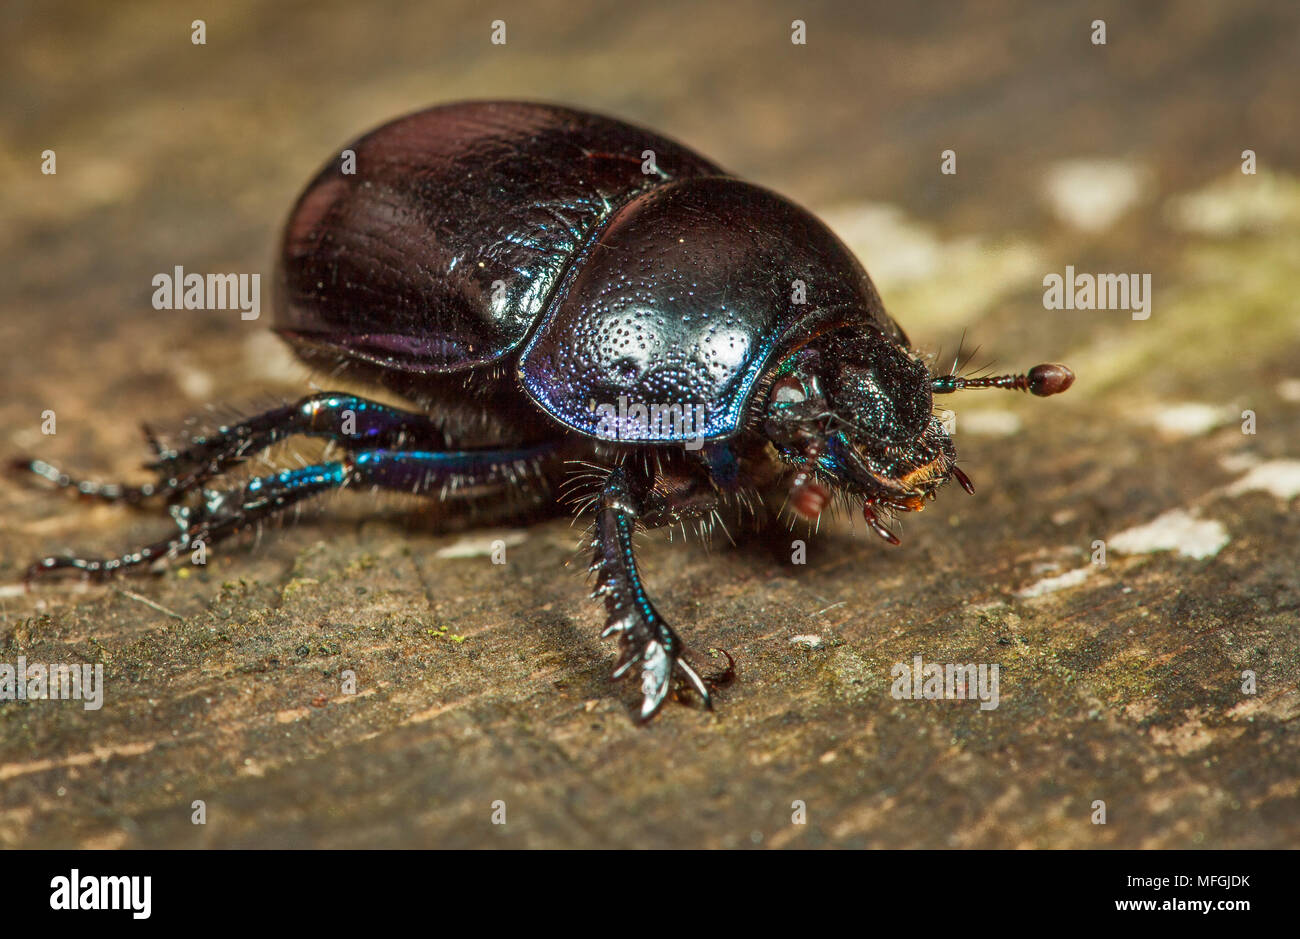 Geotrupes stercorarius (Escarabajos), Fam. Geotrupidae, Karben, Hessen, Alemania Foto de stock